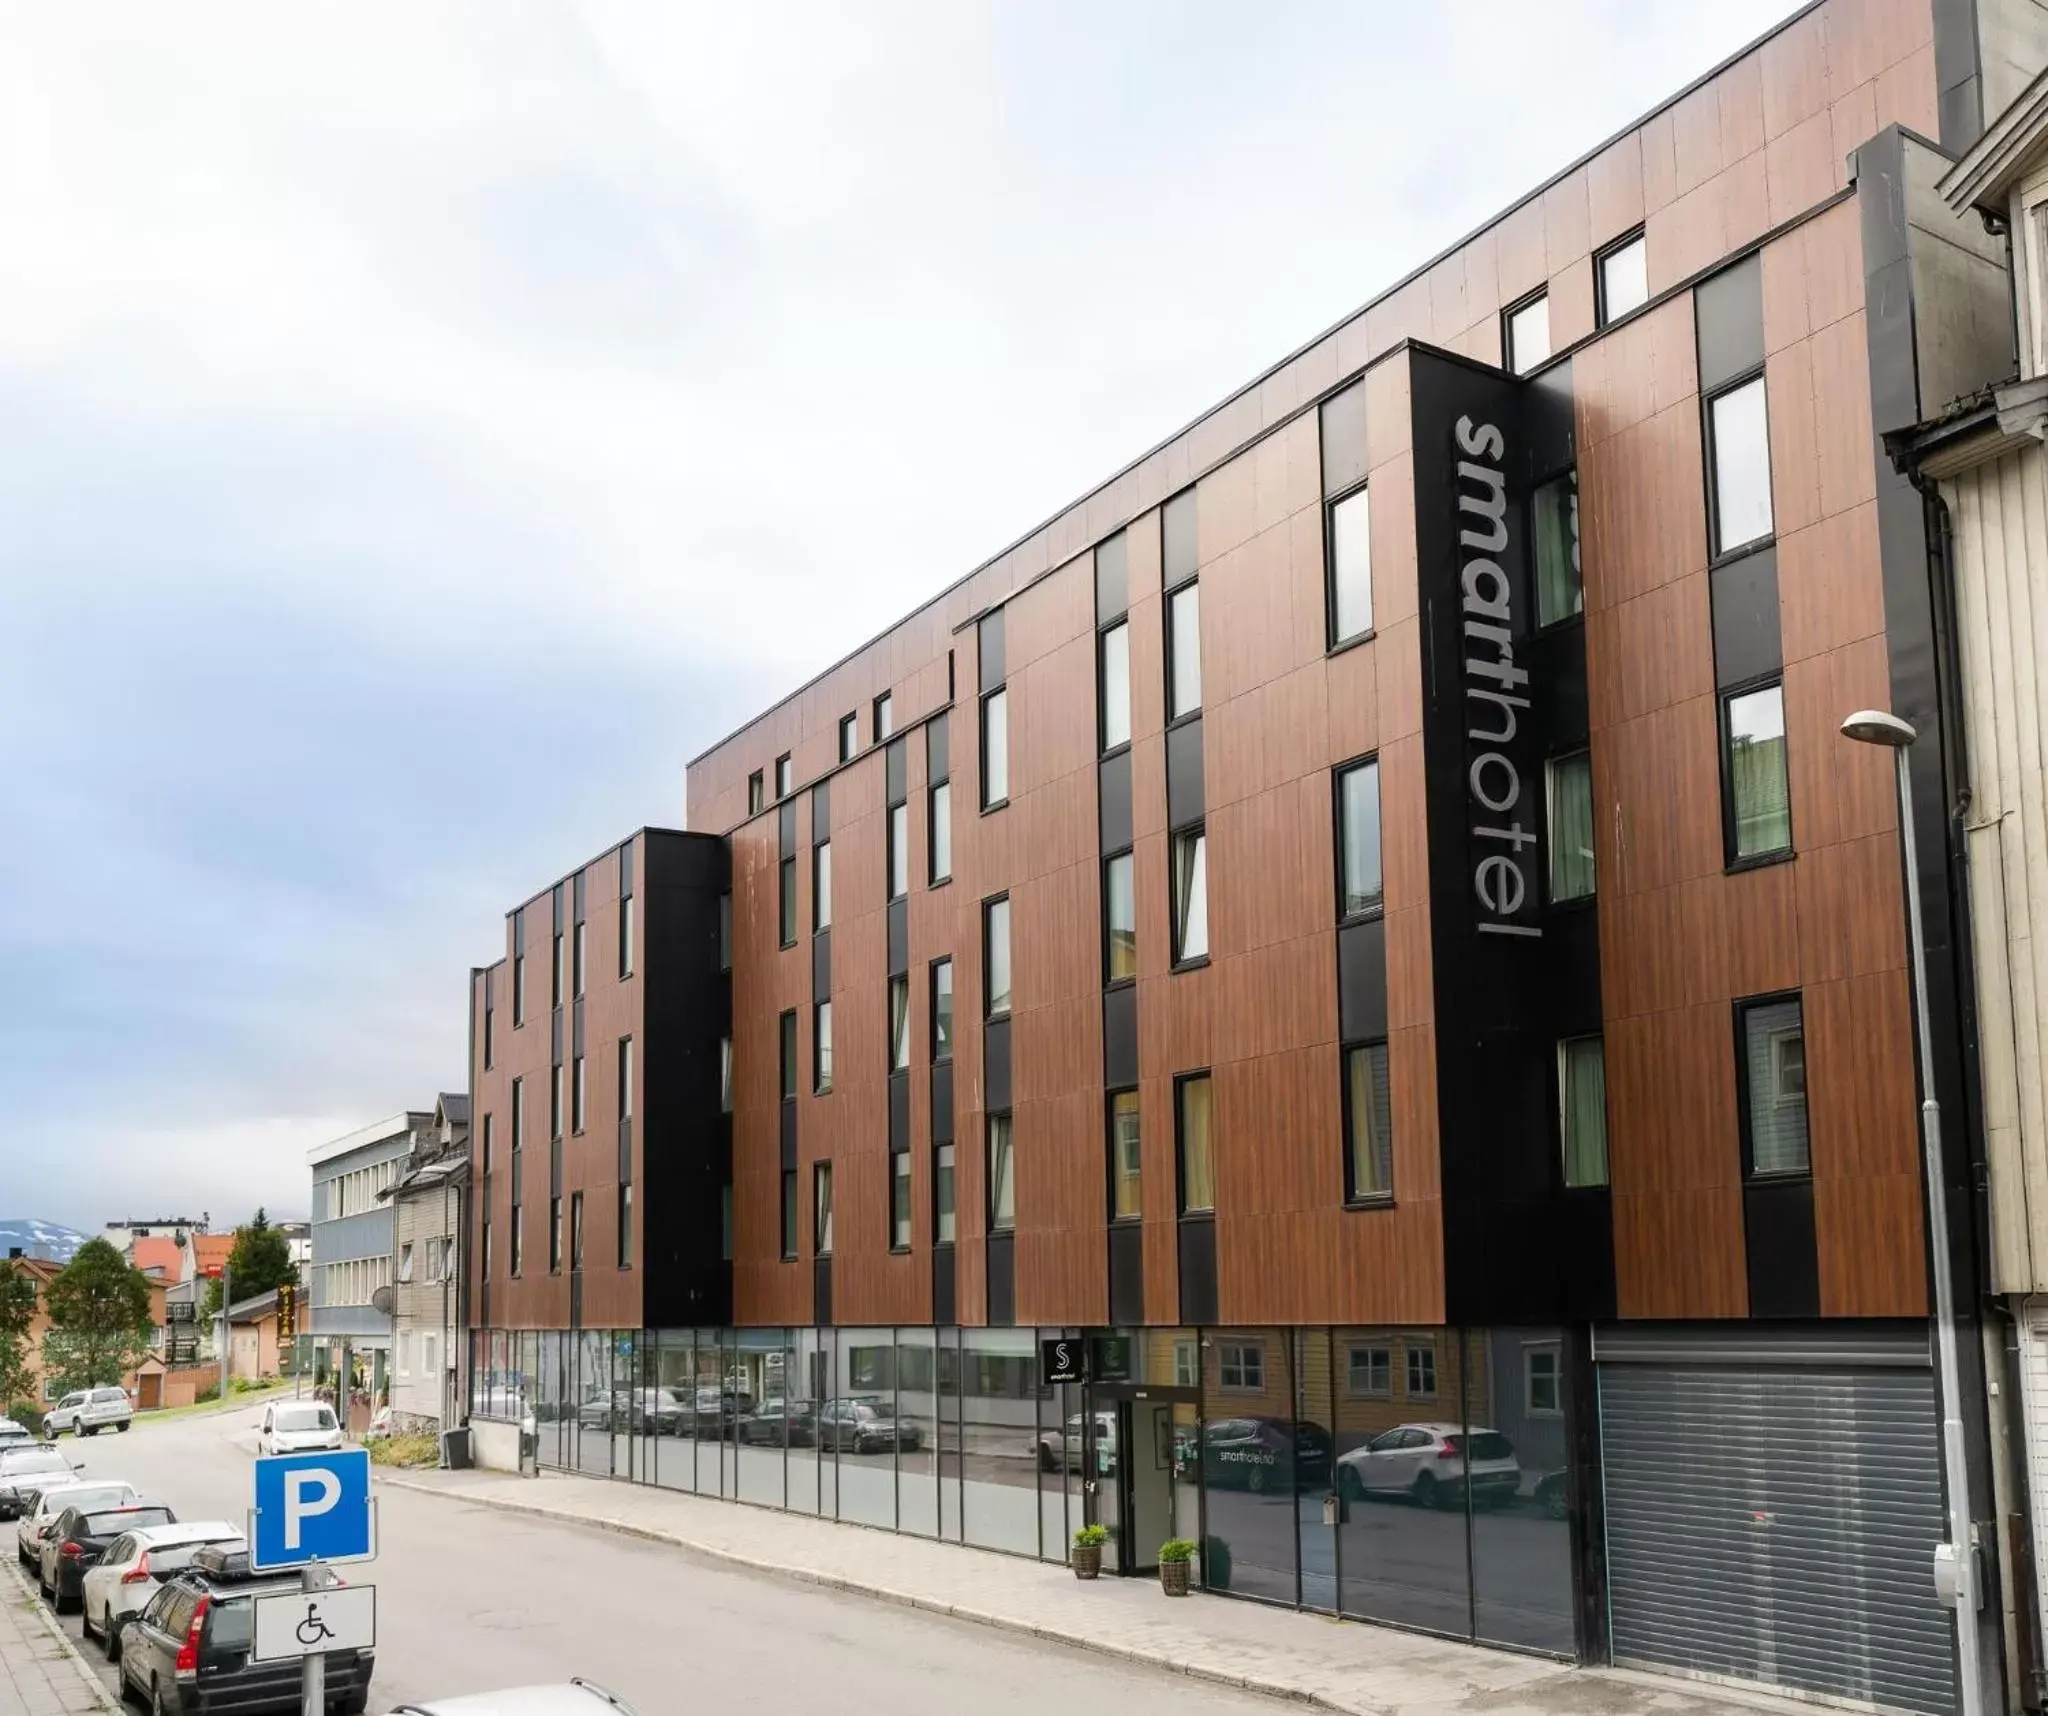 Property building in Smarthotel Tromsø